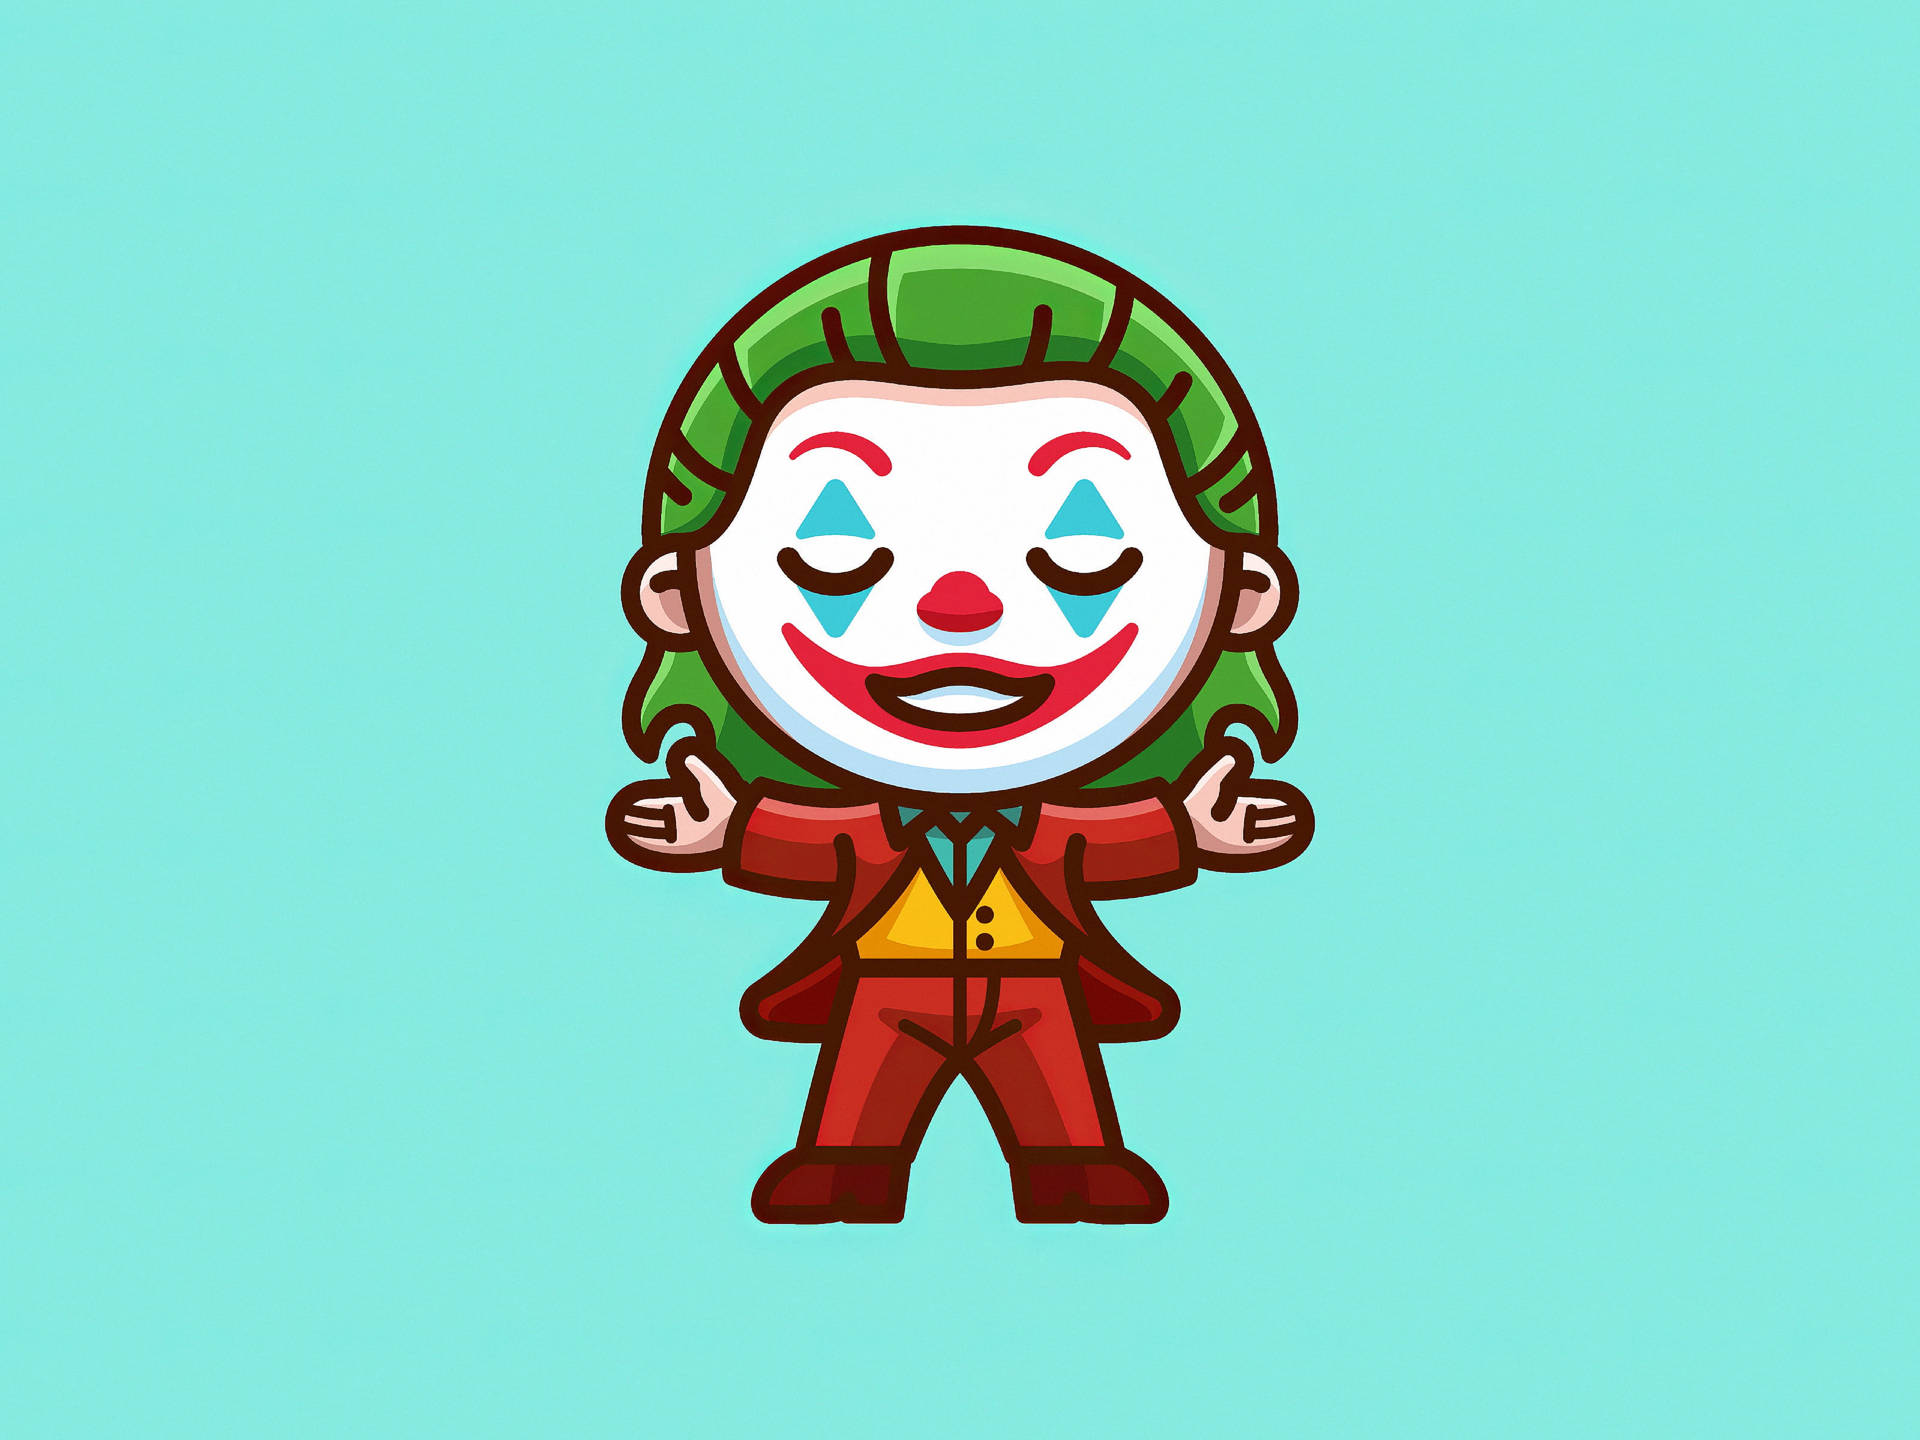 Joker 2019 Cute Cartoon